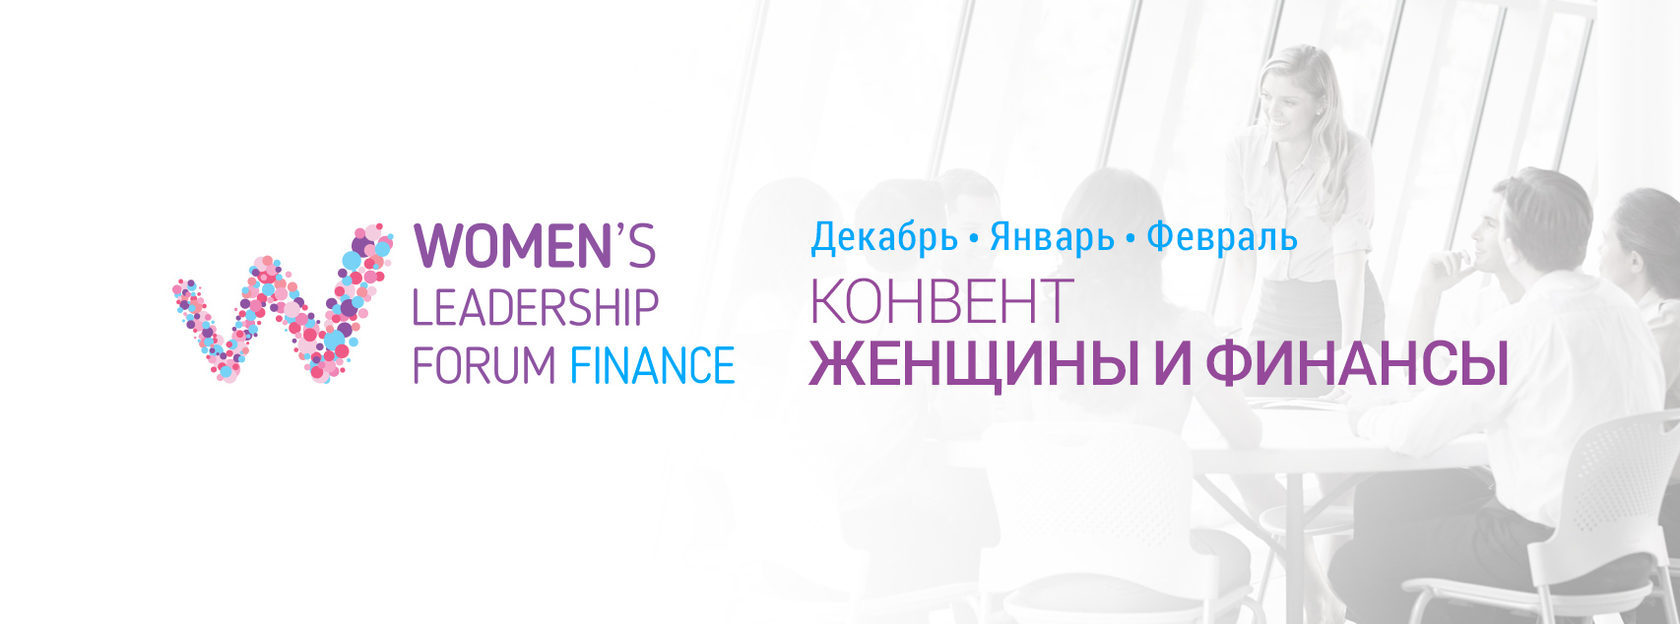 21 декабря женщина. Financial woman forum.